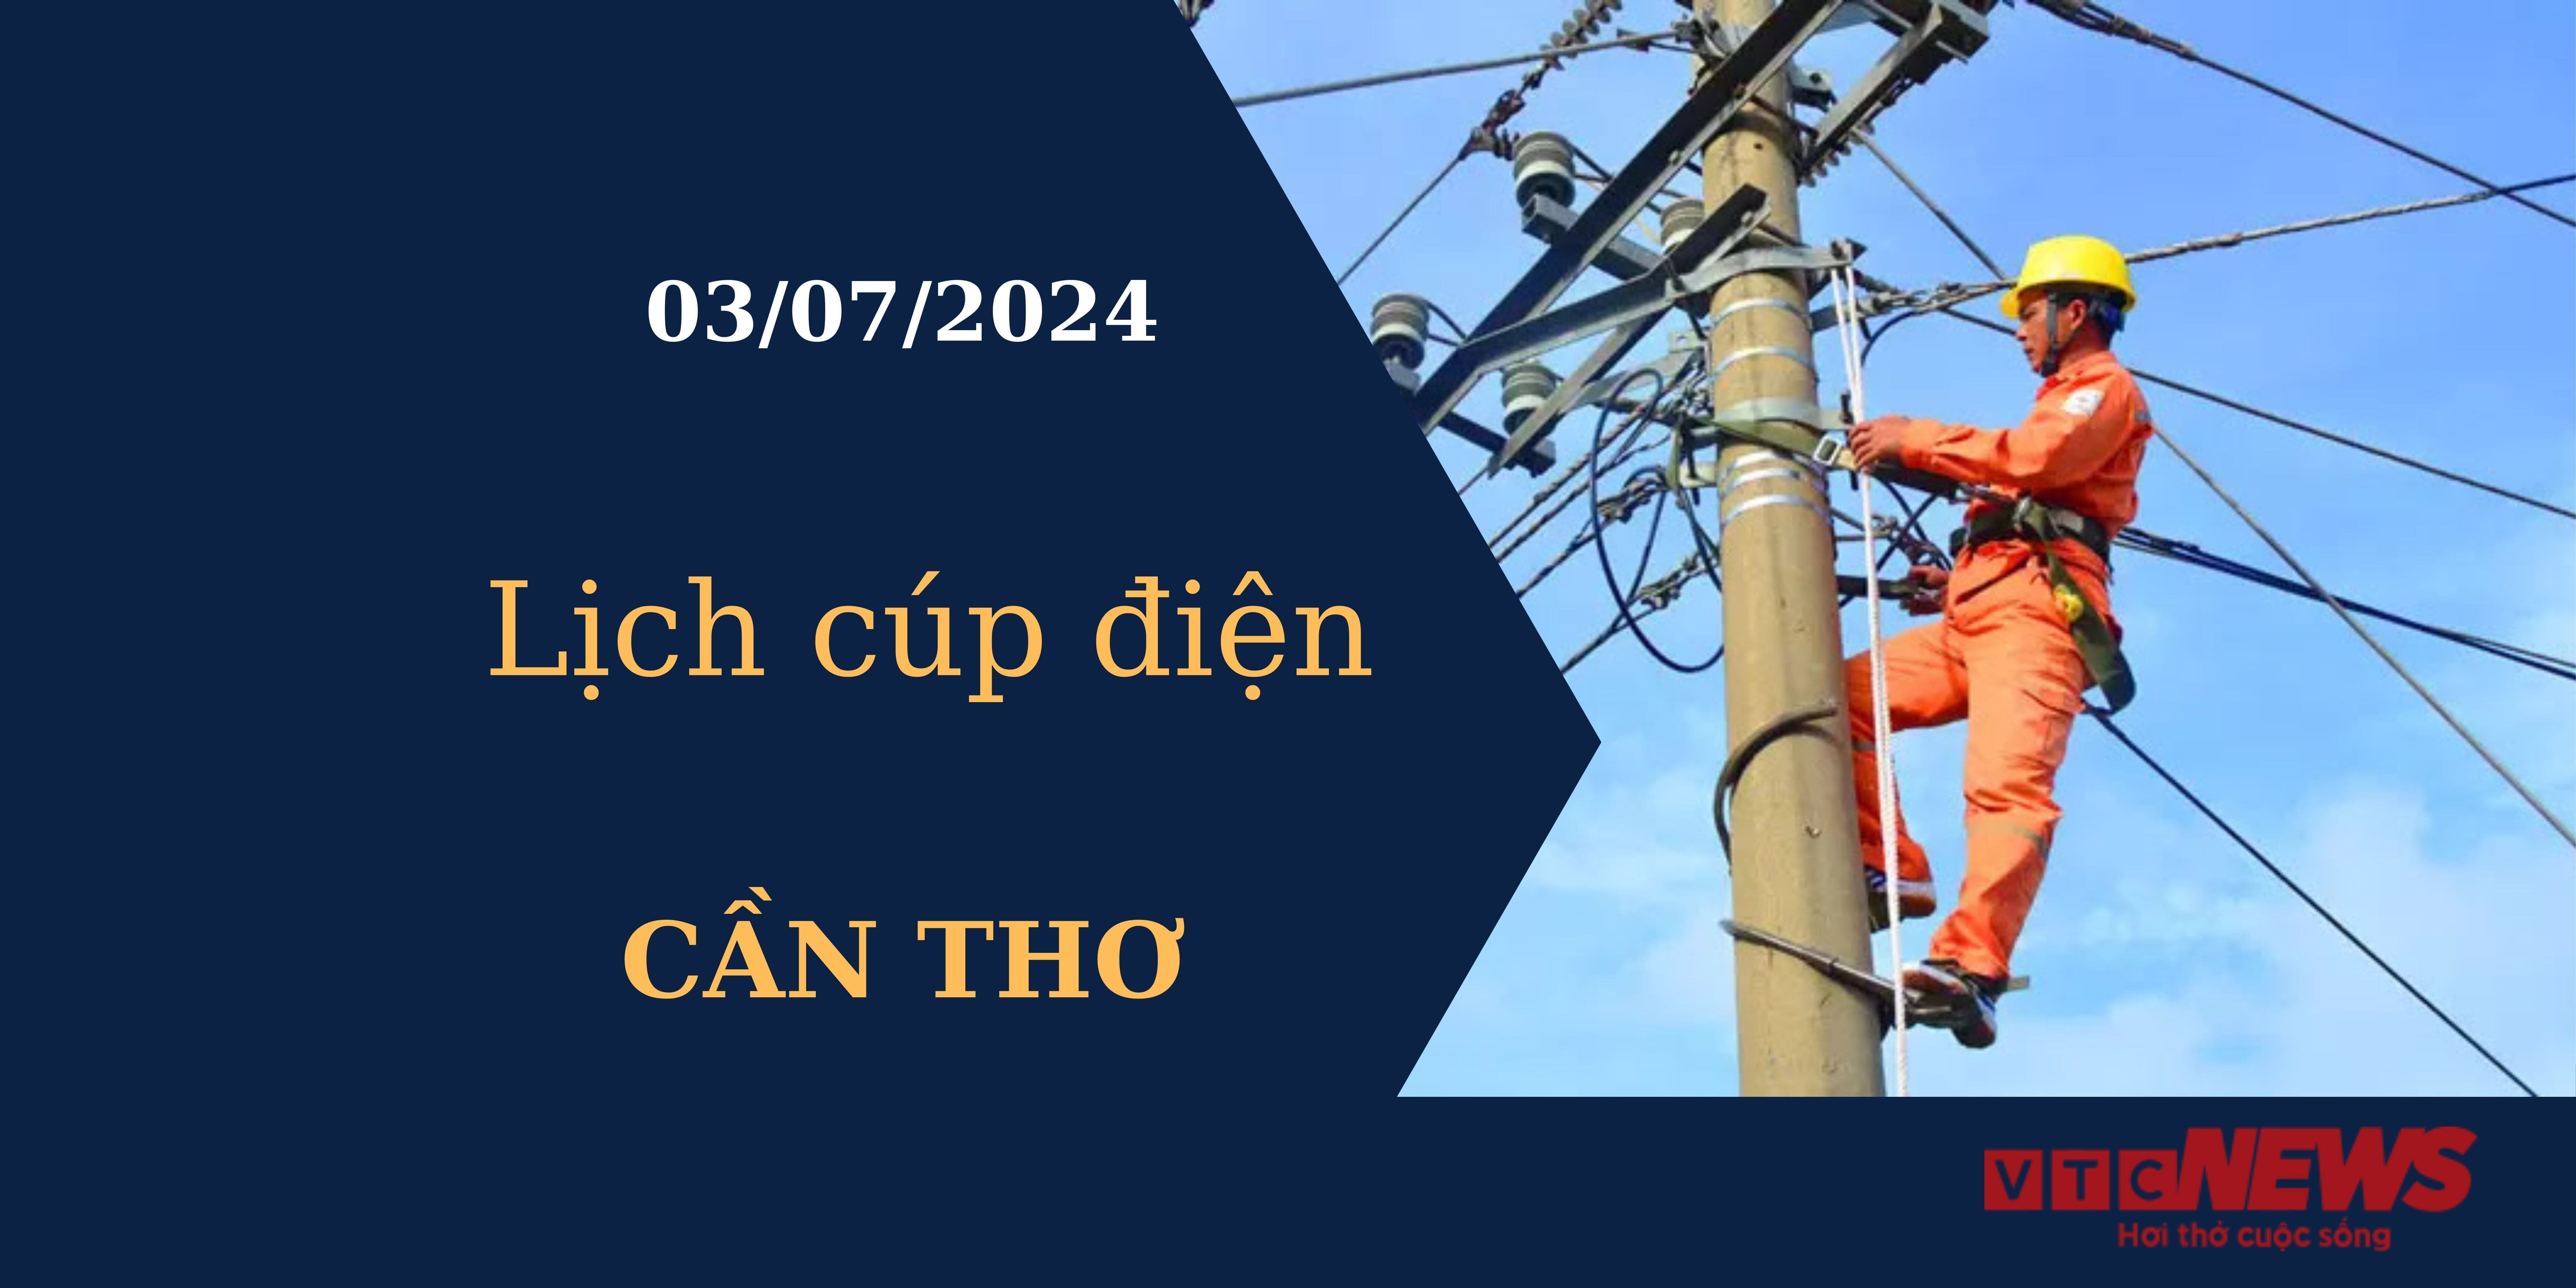 Lịch cúp điện hôm nay tại Cần Thơ ngày 03/07/2024